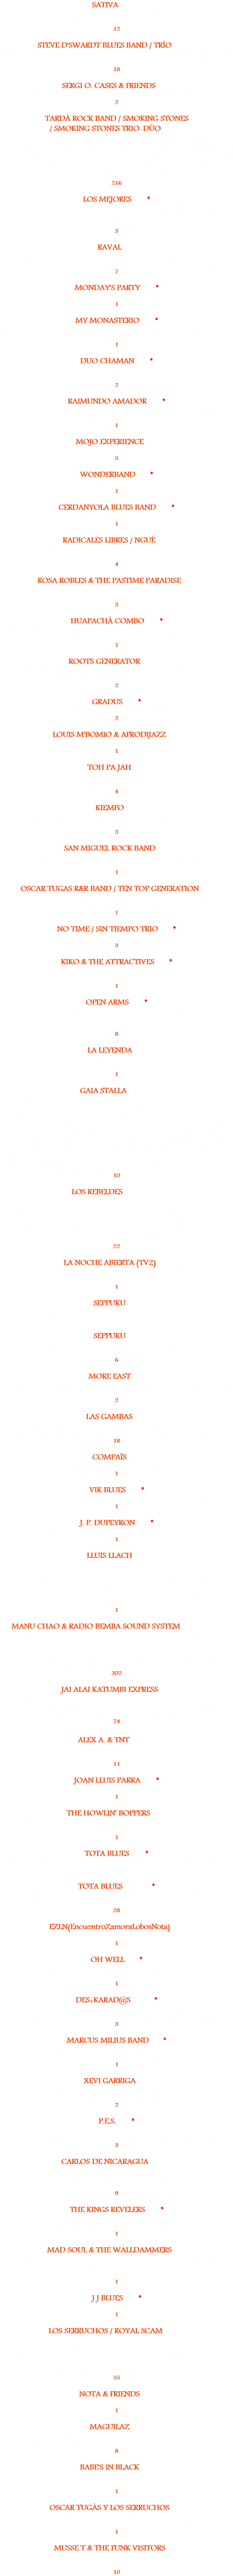 SATIVA (‘95/96)
Lluis Figueras, guitarra. Francesc Lisicic, bajo, coros. Xevi Fortuny, batería. Julio Lobos, voz, teclas. + Gerard Quintana, voz.
12 STEVE D'SWARDT BLUES BAND / TRÍO (‘94/’97)
Steve D’Swardt, voz, bajo. Javier Mas, guitarra. Caspar St.Charles y Edu Neto, batería. Julio Lobos, teclas, voz, armonica. + Andreu Simón, batería. Vicenç, guitarra. Lluis Coloma, teclas.
18 SERGI O. CASES & FRIENDS (’96)
Sergi O Cases, voz. Julio Lobos, batería, teclas. Carlos Shelly, guitarra. 2 TARDÀ ROCK BAND / SMOKING STONES
/ SMOKING STONES TRIO-DÚO (‘95/21) Sergi Ortiz, voz. Luis Arcos y Alberto Collazo "Brutus", guitarra, coros. Santi Ursul, bajo. Micky Izquierdo, batería. Julio Lobos, teclas, coros. + Jean Paul Dupeyron, Carlos Shelly, Pere Ayala, Cris Fontecilla y Xavi “Bubu” Prats, guitarras. Xavi Fusté y David Simó, batería. Alberto Soler, Jordi Portaz y Josep Martí "Pasto", bajo. Freddy Wort y Fabrizio Paparello, teclas, coros. Invitados: Bruce Dickinson y Carlos Tarque, voz. Santiago Campillo y Ricardo Ruiperez, guitarra.
216 LOS MEJORES (’96) *
Sergio O.Cases, voz. Xavi Fusté, batería. Tony Ibáñez, bajo, coros. Carlos López, guitarra. Juan Pablo Quiroga, teclas.
+ Julio Lobos, teclas, armónica, voz.
3 RAVAL (’98) Oscar Tugàs, voz. Joan Fábrega y Dani Espinet, guitarras. Carlus Ramio, bajo. Regi Vilardell, batería. + Miquel Garcès, batería. Quim"Southboy", guitarra. Julio Lobos, teclas, armónica.
7 MONDAY'S PARTY (’97) *
Se desconocen los músicos. + Julio Lobos, teclas, voz.
1 MY MONASTERIO (’97) *
Jordi Picazos, voz, guitarra. Sebas Fontecilla, batería. + Julio Lobos, teclas. El resto de músicos se desconoce.
1 DUO CHAMAN (’97) *
David “Caballo Loco” Martínez, voz, piano, armónica. Guitarrista desconocido. + Julio Lobos, piano. 2 RAIMUNDO AMADOR (’97) *
Raimundo Amador, guitarra, voz. Pepe Bao, bajo. + Julio Lobos, armónica. El resto de músicos se desconoce.
1 MOJO EXPERIENCE (’97)
Pere Ayala, guitarra, coros. Xavi Fusté, batería. Alberto Soler, bajo. Julio Lobos, voz, teclas.
5 WONDERBAND (’97) *
Se desconocen los músicos. + Julio Lobos, voz, teclas.
1 CERDANYOLA BLUES BAND (’98) *
Se desconocen los músicos. + Julio Lobos, teclas, voz, armónica.
1 RADICALES LIBRES / NGUÉ (’98)
Patxi Mendizábal, guitarra, voz, coros. Ana Aysa, voz. Malik, percusión. Marc Thió, batería. Noel Essome, bajo. Julio Lobos, teclas, coros.
4 ROSA ROBLES & THE PASTIME PARADISE (’98)
Rosa Robles, voz. Gustavo Rocha, guitarra. Carlos Belafonte, bajo. Pablo Posa, batería. Julio Lobos, teclas, coros.
3 HUAPACHÁ COMBO (’98) *
Quim Carreras, voz. Ricky Coll, bajo, coros. Jordi Golmayo, batería. Xavi Navarro, teclas. El resto de músicos se desconoce. + Julio Lobos, armónica. 1 ROOTS GENERATOR (‘98/’99)
Freddy Pitoni, voz, guitarra. Mauri Pivetta, bajo, coros. Toni Capel, batería. Luca Vignando, guitarra. Tomás Romero, saxo. Julio Lobos, teclas.
2 GRADUS (’99) *
Toni Torres, bajo. + Julio Lobos, teclas, voz. El resto de músicos se desconoce.
2 LOUIS M'BOMIO & AFRODIJAZZ (’99)
Louis M’bomio, voz. Julio Lobos, teclas. El resto de músicos se desconoce.
1 TOH PA JAH (’00)
Pau Josa, batería. Marc Minguella, guitarra. Xavi Bardala, percusión. Joan Massana, bajo. Xavi Salrà, saxo. Justin Williams, saxo. Julio Lobos, teclas. 4 KIEMFO (’00)
Martin Compaore, guitarra, voz. Patxi Mendizábal, guitarra. Armand “Moon” Parellada, batería. Julio Lobos, teclas, voz..
3 SAN MIGUEL ROCK BAND (’00)
Toni Canyelles, voz, guitarra. Julio Lobos, teclas, voz, coros. El resto de músicos se desconoce.
1 OSCAR TUGAS R&R BAND / TEN TOP GENERATION (’00)
Oscar Tugàs, voz, guitarra. Gustavo Rocha, guitarra. Roger Guardia, batería. Carlus Ramio, bajo. Julio Lobos, teclas, voz, coros.
7 NO TIME / SIN TIEMPO TRIO (’00) *
Laila Martín, voz. Carlos Delgado, bajo. + Julio Lobos, teclas. 3 KIKO & THE ATTRACTIVES (’99) *
Kiko, bajo. Pabli Zedena, batería. “Heavy”, guitarra. + Julio Lobos, teclas. Se desconoce el resto de músicos.
1 OPEN ARMS (‘99) *
Cece Giannotti, guitarra, voz. Joan Vinyals, guitarra, voz. Hernán Flores, bajo. Andreu Simón, batería. + Federico Rimini, guitarra. Julio Lobos, piano, armónica, voz. Pere Foved , bateria. Joe Lewis, bajo.
8 LA LEYENDA (’00)
David“Caballo Loco”Martínez, voz, armónica. Jordi Ortiz, batería. Josep Mª Merchán, bajo. Julio Lobos, teclas, voz.
1 GAIA STALLA (‘97 / '13)
01: Esther Garrido, batería, voz, coros. Ismael García, guitarra. Jacint Bonell, bajo. Julio Lobos, teclas, voz, coros, armónica.
02: Esther Garrido, batería, voz, coros, caja de ritmos. Robert Gómez, guitarra. JJ Mas, bajo, coros. Edgar Gubianas, teclas. Julio Lobos, teclas, voz, coros, armónica, batería. 03: Esther Garrido, batería, voz, coros, loops. Robert Gómez, guitarra. Raúl del Moral, guitarra, teclados, coros. Josep"Pasto"Martí, bajo. Julio Lobos, teclas, voz, coros, armónica. 04: Esther Garrido, batería, voz, coros. Raúl del Moral, guitarra. Josep "Pasto" Martí, bajo. Julio Lobos, voz, teclas, armónica. Invitad@s: Chus Marín y Kike Albareda, performances & savoir faire. Nuria López, comportamiento místico. Leur, Freehand y Alberto Hurakán y Rocío Tornado, maestros de ceremonias del Hip Hop de Barris.
10 LOS REBELDES (‘00 / '02 / '23)
2000-2002:
Carlos Segarra, voz, guitarra. Luis Arcos y Pere Ayala, guitarra, coros. Sergio Manobens, bajo, coros. Michel Solbes, batería, coros. Julio Lobos, teclas, armónica, coros. 2023:
Carlos Segarra, voz, guitarra. M. A. Escorcia, guitarra, coros. Celso, bajo, coros. Lucky, batería. Julio Lobos, teclados, coros, armónica, acordeón.
22 LA NOCHE ABIERTA (TV2) (’00)
Joan Vinyals, voz, guitarra. Toni Olaf Sabater, piano. David Palau, guitarra. Julio Lobos, armónica. 1 SEPPUKU (’00)
Sargantana, voz, guitarra. Nico Boudou, percusión. Julio Lobos, teclas, acordeón. Jordi Carbó, saxo. SEPPUKU ('05)
Sargantana, voz, guitarra. Jordi Carbó, saxo. Quico Samsó, batería. Julio Lobos, teclas, armónica. 6 MORE EAST (’00)
Joan “Johnny” Rives, voz, guitarra. Marcos Garrido, guitarra. Julio Lobos, batería, voz, coros. Bajista desconocido.
2 LAS GAMBAS (’00)
Mireia Tejero, saxo, coros. Marisa Alejo, voz. Mercè Ros, batería, coros. Maite Arilla, bajo, coros. Carl@s López, guitarra. Mónica Muntaner, baile, coros. Julio Lobos, teclas.
18 COMPAÏS (’01)
Miki Lez, guitarra, tres, voz. Julio Lobos, acordeón, armónica.
1 VIK BLUES (’01) *
Viktor, guitarra, voz. + Julio Lobos, armónica, voz. Se desconoce el resto de músicos.
1 J. P. DUPEYRON (’00) *
Jean Paul Dupeyron, guitarra, voz. Jordi Armengol, guitarra, bajo. + Julio Lobos, batería.
1 LLUIS LLACH (’00)
Lluis Llach, voz, piano. Jordi Armengol, guitarra, bajo. Jean Paul Dupeyron, guitarra, coros. Julio Lobos, teclas. Lucrecia, voz.
Quim Alabau, Chello. Jordi Giménez, Pep Moliné y Oscar Lanuza, trombón. Edith Maretzki, violín. Nan Mercader, percusión. Luis Rigou, Flauta, ocarina, Siku, quena, moxenyo. Xavier Torra, contratenor. + Cor Infantil de l’Orfeó Català i el Conjunt Vocal de l’Institut Jean Lurçat de Perpinyà. Lluis Vilamajor, director.
1 MANU CHAO & RADIO BEMBA SOUND SYSTEM (‘00/03-07/09) Manu Chao, voz, guitarra. David Bourguignon, batería, coros. Madjid Fahem, guitarra, coros. Gambeat, bajo, coros. Fermín Muguruza y Bidji, voz, coros. B.Roy, acordeón. Gianny Salazar, trombón, coros. Raynald Colom, Roy Paci y Angelo Mancini, trompeta. Gerard Casajús, Garbancito e Ibrahim Rouabah, percusión. Chuco, sonido. Julio Lobos, teclas, sampler, coros. + Diallo! Invitada: Ari, voz.
302 JAI ALAI KATUMBI EXPRESS (03) Manu Chao, voz, guitarra. Fermín Muguruza, voz, coros. David Bourguignon, batería, coros. Madjid Fahem, guitarra, coros. Gambeat, bajo, coros. Gerard Casajús, percusión. Chuco, sonido. Julio Lobos, teclas, sampler, coros. 24 ALEX A. & TNT (‘01/’02)
Alex Zayas, voz, guitarra. Jordi Llaurens, bajo. Marc Ruiz, batería. Joan Casas, saxo. Julio Lobos, teclas.
11 JOAN LLUIS PARRA ('01) *
Joan Lluis Parra, voz, guitarra. + Julio Lobos, piano.
1 THE HOWLIN' BOPPERS (’01)
Eddie “Catman”, voz. Daniel Piris, guitarra. Jordi Golmayo, batería. Marc Santó, violín. Julio Lobos, teclas, armónica. Bajista desconocido.
1 TOTA BLUES (’02) *
Tota, voz, armónica. Martín J.Merino, guitarra. “Piturro”, bajo. David Samaniego, teclas. Rodrigo, batería.+ Julio Lobos, teclas. TOTA BLUES ('05/'06...) *
Tota, voz, armónica. Martín J.Merino, guitarra. “Piturro”, bajo. David Giorcelli y David Sam, piano. Julio Lobos, batería o piano.
28 EZLN(EncuentroZamoraLobosNota) (’02)
Ignasi Zamora, bajo. Enric “Nota” Parès, batería. Julio Lobos voz, teclas.
1 OH WELL (’02) *
Francesc “Pelut”, guitarra, voz. Juli, batería. + Julio Lobos, armónica, voz. Se desconoce el resto de músicos.
1 DES+KARAD@S ('02/10) *
Mechita "Prendía", voz, guitarra. "Balel Boom", bajo. "Tiricia", voz, palmas. Jou "Carcasa", batería. "El Guiri", guitarra. "La Yole", baile, palmas. "El tímido", teatro. + Julio Lobos, teclas.
3 MARCUS MILIUS BAND (’03) *
Marcus Milius, voz, armónica. Roger Guardia, batería. David Samaniego, piano. Isaac"Fosi"Barri, bajo. + Julio Lobos, teclas.
1 XEVI GARRIGA (’03)
Xevi Garriga, voz, guitarra. Enric Illa, batería. Lluis Coloma, teclas. Javi Martín, bajo. Angel, guitarra. Julio Lobos, teclas, coros, armónica.
2 P.E.S. (’03) *
Joan Vinyals, voz, guitarra. Enric“Nota”Parès, batería, coros. Hernán Flores, bajo. + Laura Simó, voz, coros. Guillermo Prats, bajo. Xavier Figuerola, saxo. Julio Lobos, teclas, voz, coros.
3 CARLOS DE NICARAGUA (’03/'04)
Carlos de Nicaragua, voz. Patxi Mendizábal, guitarra, coros y paciencia infinita. Vani, mc. Ana Aysa, coros. Fandila Jiménez y Ferrer, percusión. Dani Catena, batería. Malik, bajo, coros y la vie en rose. Julio Lobos, teclas. 9 THE KINGS REVELERS (’03) *
Agustí Mas, guitarra. Henry Wavelengt, voz. Sergi Barahona, bajo. Roger Guardia, batería. Lluís Souto, armónica . + Julio Lobos, voz, armónica.
1 MAD SOUL & THE WALLDAMMERS (’03)
Fito, voz, maracas. Carlos Ordax, voz, guitarra. Boris y Jordi Carbó, saxos. Miquel Izquierdo, batería. Julio Lobos, teclas, coros. Christina, Desi, Montse y Pascual, coros. Cesc Villanueva, percusión. 1 J J BLUES (’03) *
Jordi Llaurens, guitarra, voz. "Little" Jordi Abad, armónica. + Julio Lobos, piano.
1 LOS SERRUCHOS / ROYAL SCAM (‘03/…)
Julio Lobos, voz, teclas. Luis Arcos, guitarra. Pasto Martí, bajo. Roberto Olori, batería. + Robert Gómez, Gustavo Rocha, guitarra. JJ Mas e Isaac Barrera, bajo. Roger Guardia , Eric Sánchez y Reginald Vilardell, batería. Invitad@s: Víctor Hugo "Chiche", guitarra. Fandila Jiménez y Didac, percusión. Esther Garrido, Dàcil López, Keith Clark y Roger, voz. Edu Neto, batería. Gustavo Sousa, bajo. Jaume Serra, armónica.
55 NOTA & FRIENDS (’04)
Enric“Nota”Parès, batería, coros. Hernán Flores, bajo. Julio Lobos, teclas, voz.
1 MAGUILAZ (’04)
Miguel“Maguila”, voz, guitarra. Daniel Piris, guitarra. Angelo, percusión, coros. Jordi Bou, bajo, coros. Héctor Larrosa, batería, coros. Julio Lobos, teclas. Invitada: Fina la Ina.
8 BABE'S IN BLACK (’04)
Pere Ayala, guitarra, voz, coros. Jordi Vives, guitarra, voz, coros. Jose Mª Azorín, bajo. Xavi Vilagut, batería. Julio Lobos, teclas, voz, coros.
1 OSCAR TUGÀS Y LOS SERRUCHOS ('04)
Oscar Tugàs, voz, guitarra. Robert Gómez, guitarra. Isaac Barrera, bajo, coros. Roger Guardia, batería. Julio Lobos, voz, teclas, coros. + David Mora, armónica.
1 MUSSE T & THE FUNK VISITORS ('04)
Susana Abellán, voz. Robert Gómez, guitarra. Roberto Olori, batería. Mustafá Bouchou, bajo, coros. Julio Lobos, voz, teclas, coros. 10